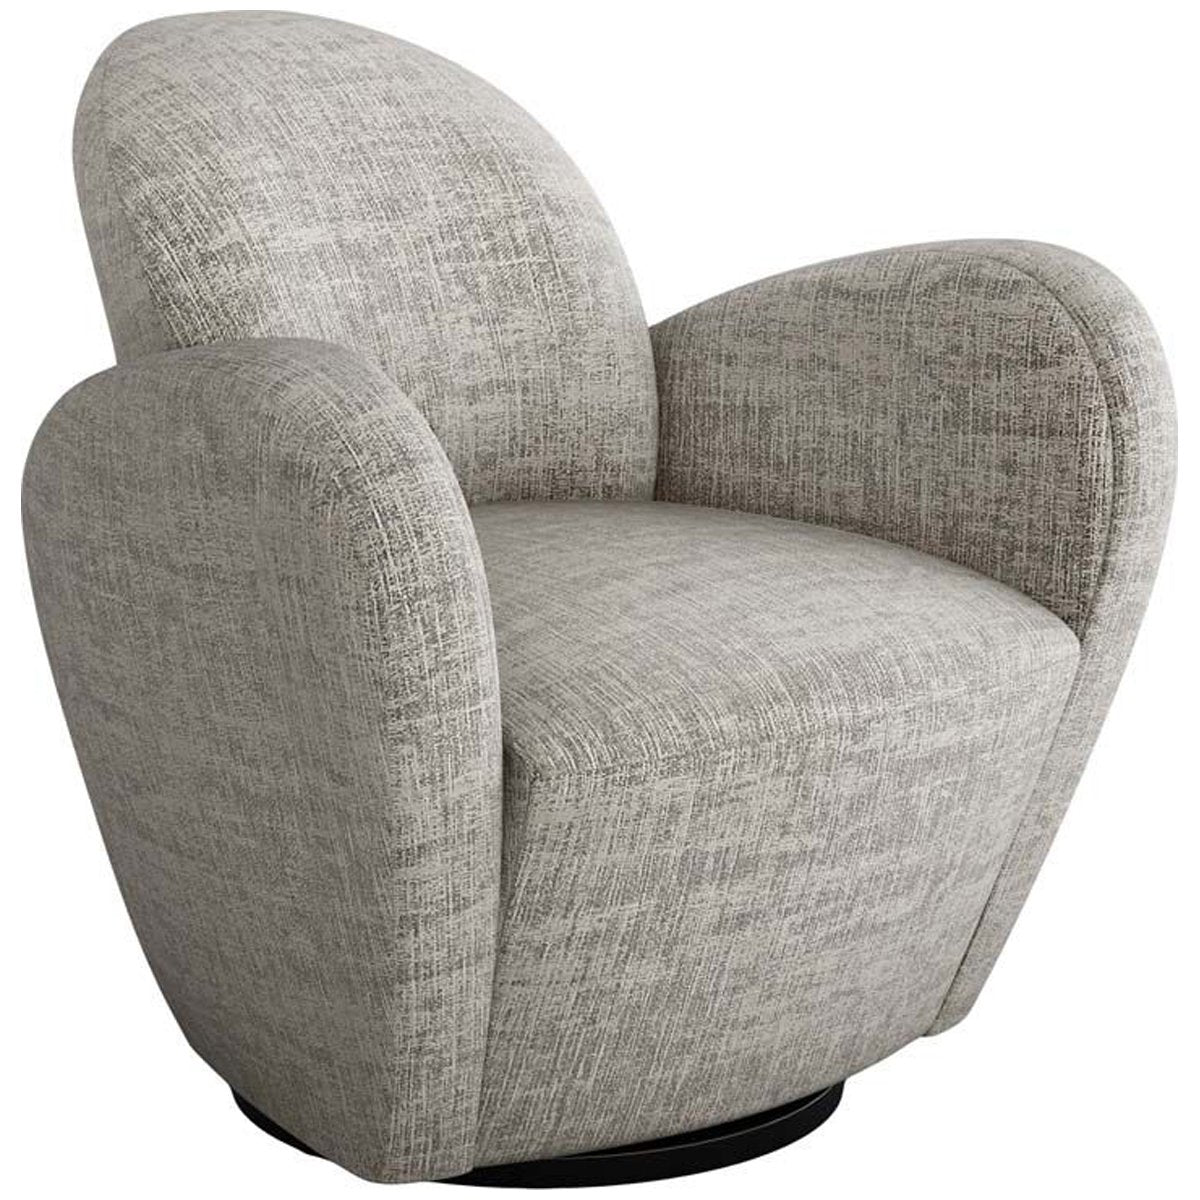 Interlude Home Miami Swivel Chair